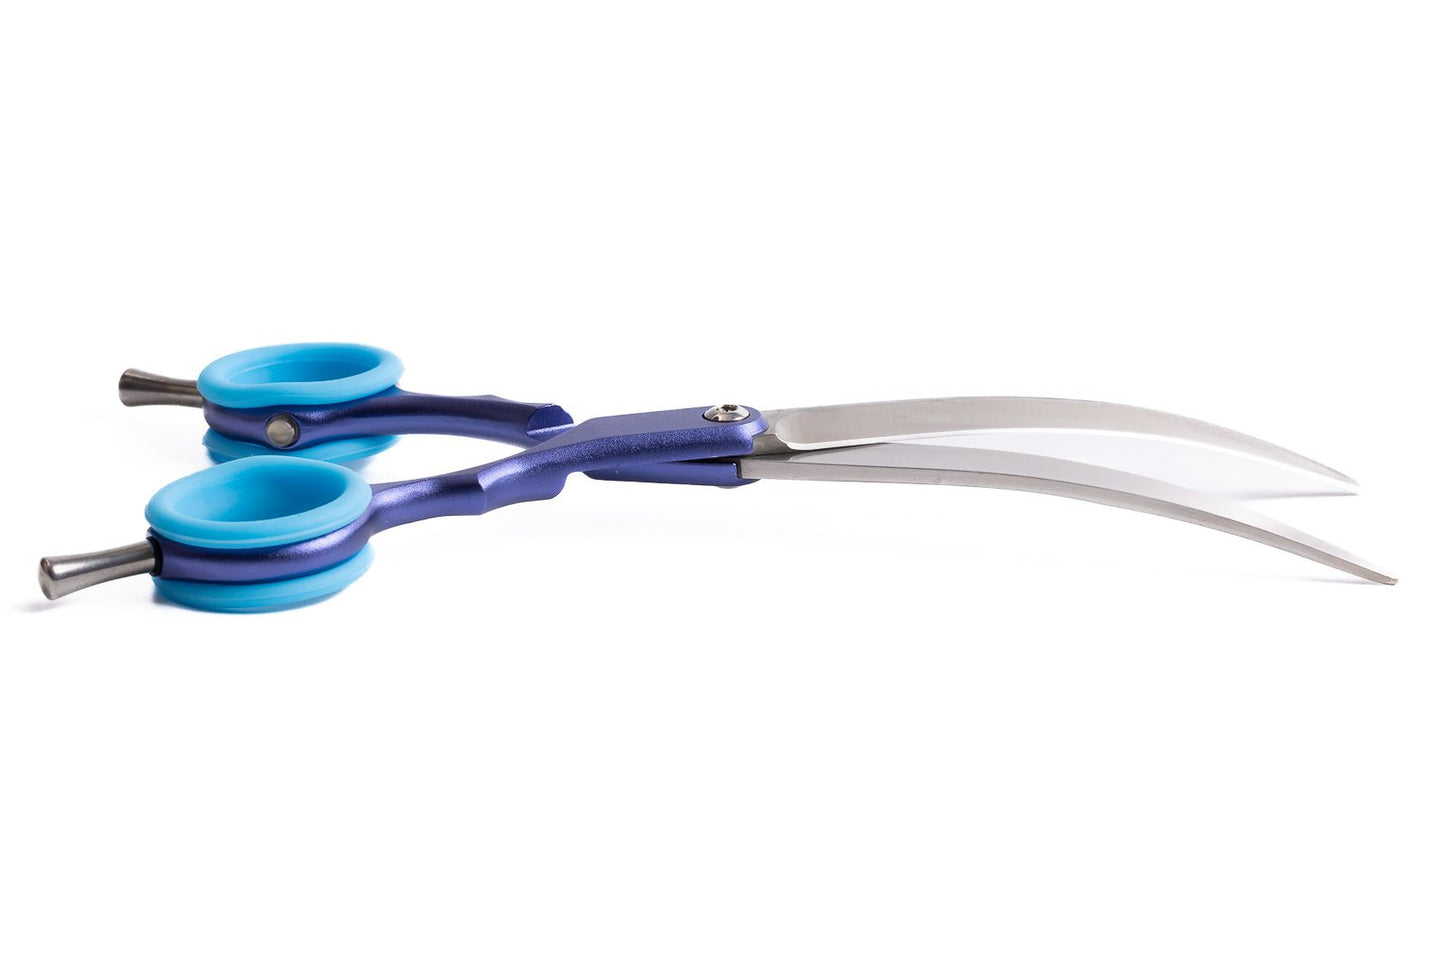 Asta, 6.5" asian fusion curved scissors(Right Hand)Aluminium Handle, 440c Steel Blades.